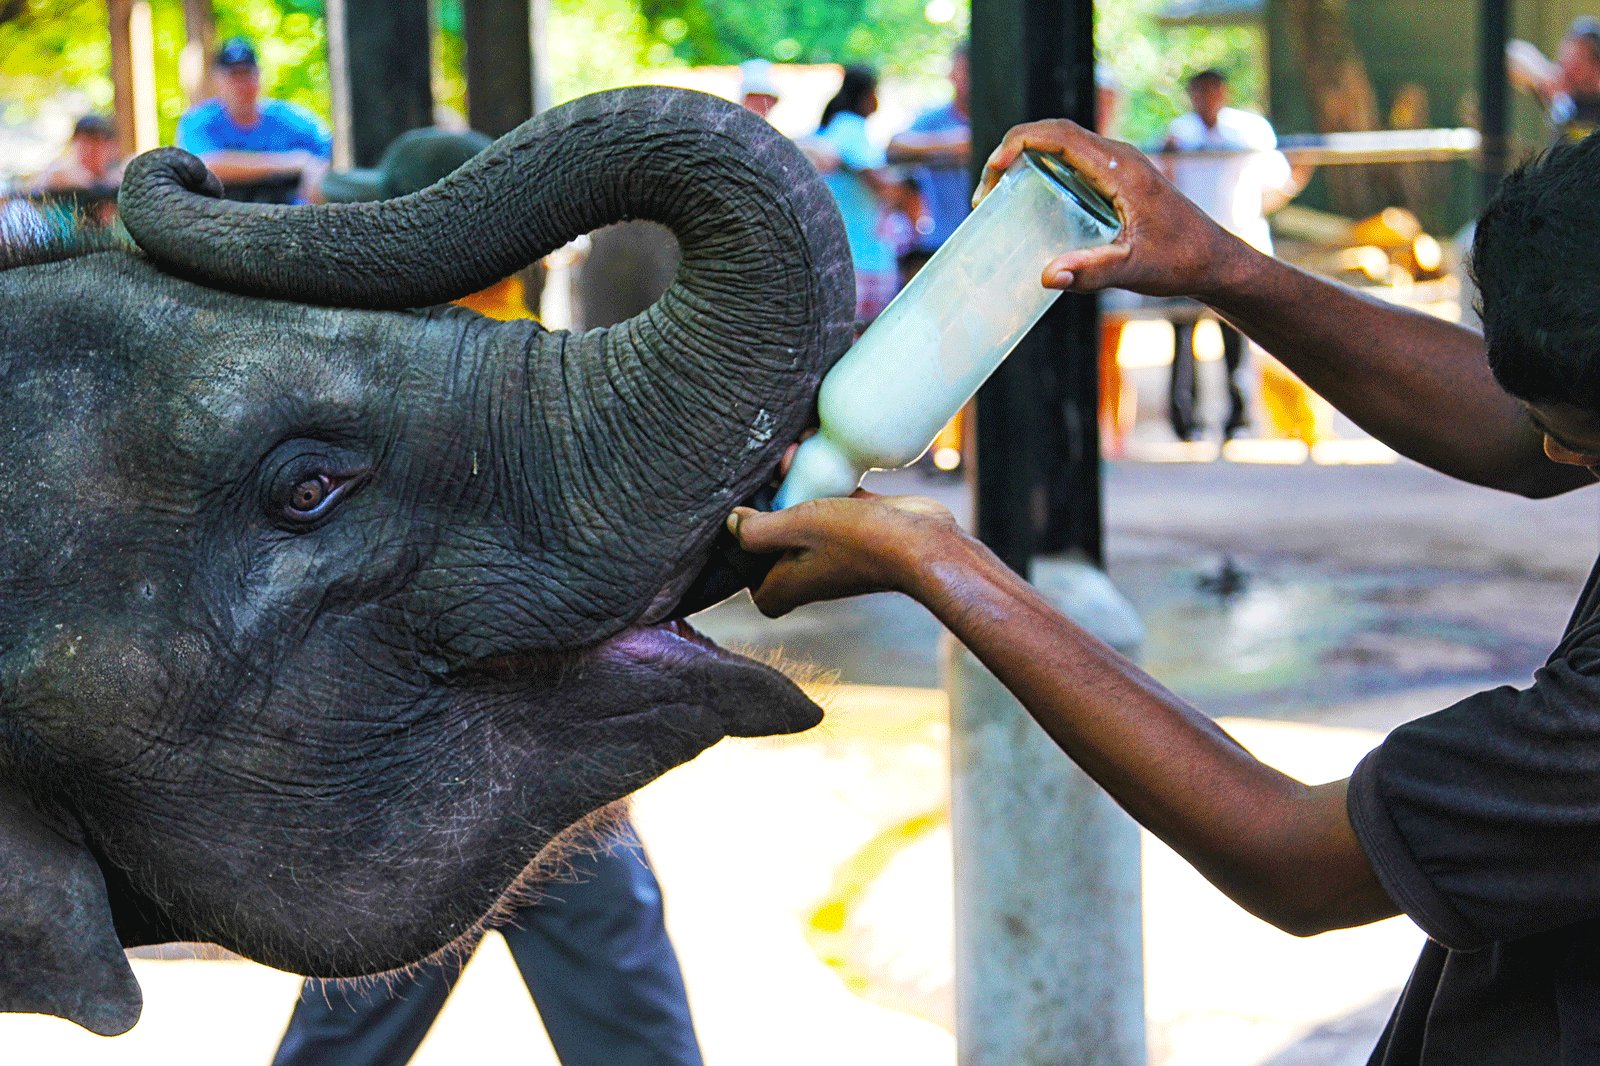 Шри ланка питомник. Слоновий питомник Шри Ланка Пиннавела. Шри Ланка слоны Пинавелла. Шри Ланка питомник слонов. Шри Ланка приют Пиннавела.